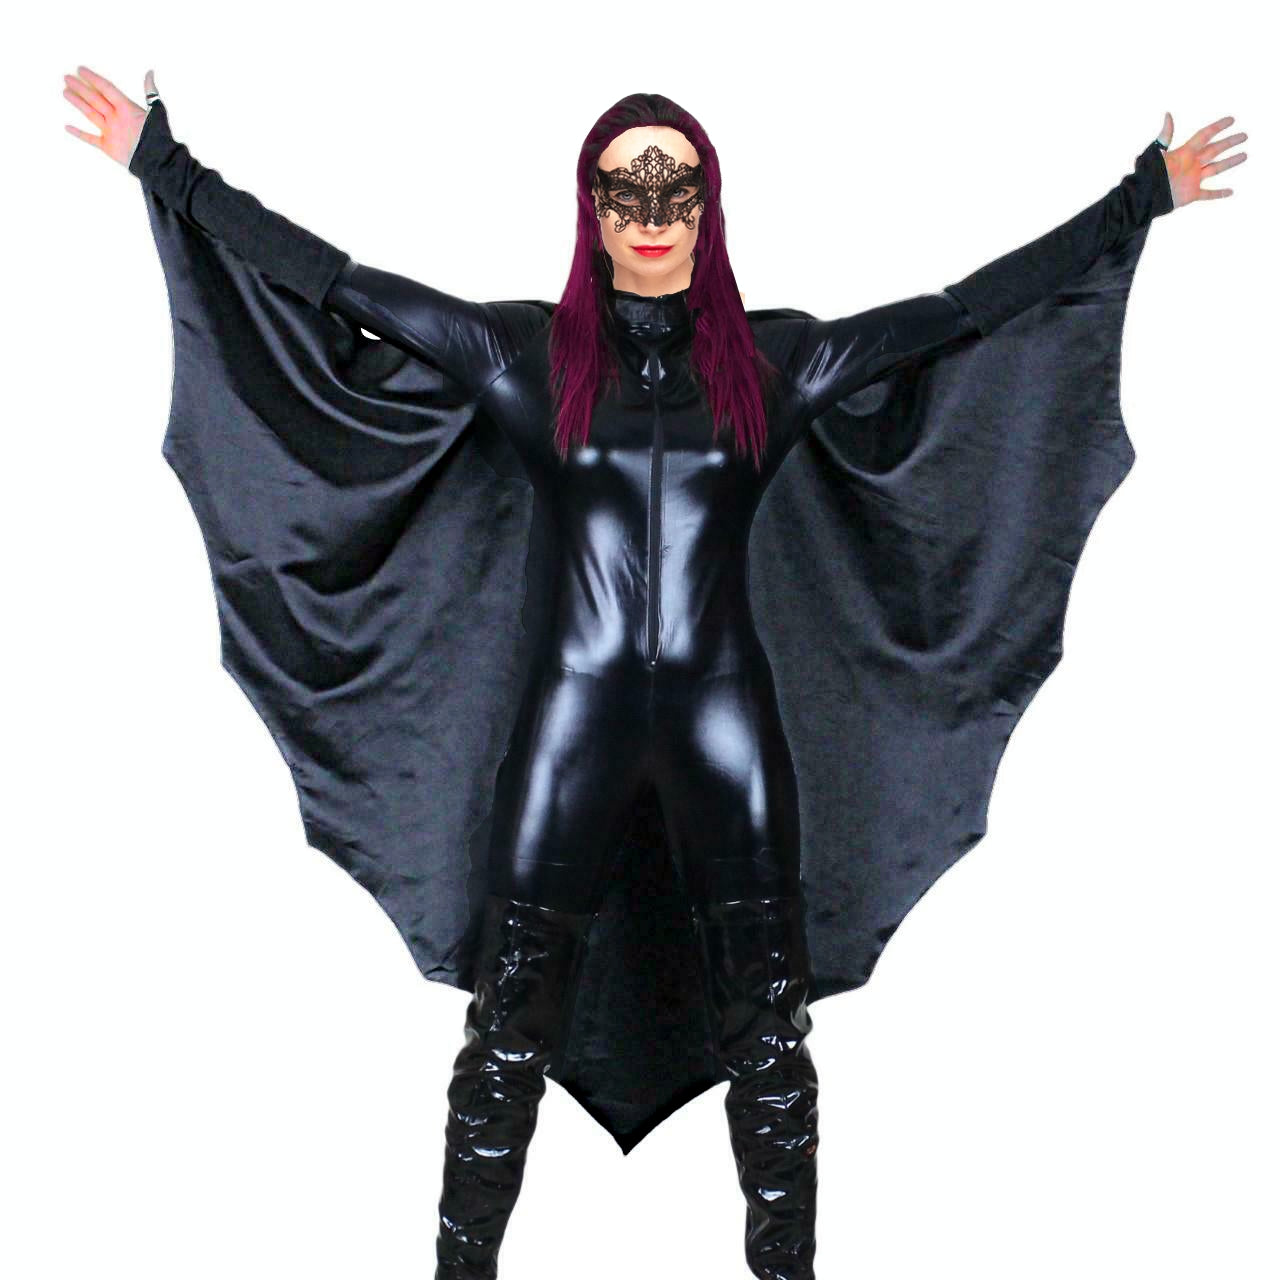 Bat Girl Costume.jpg